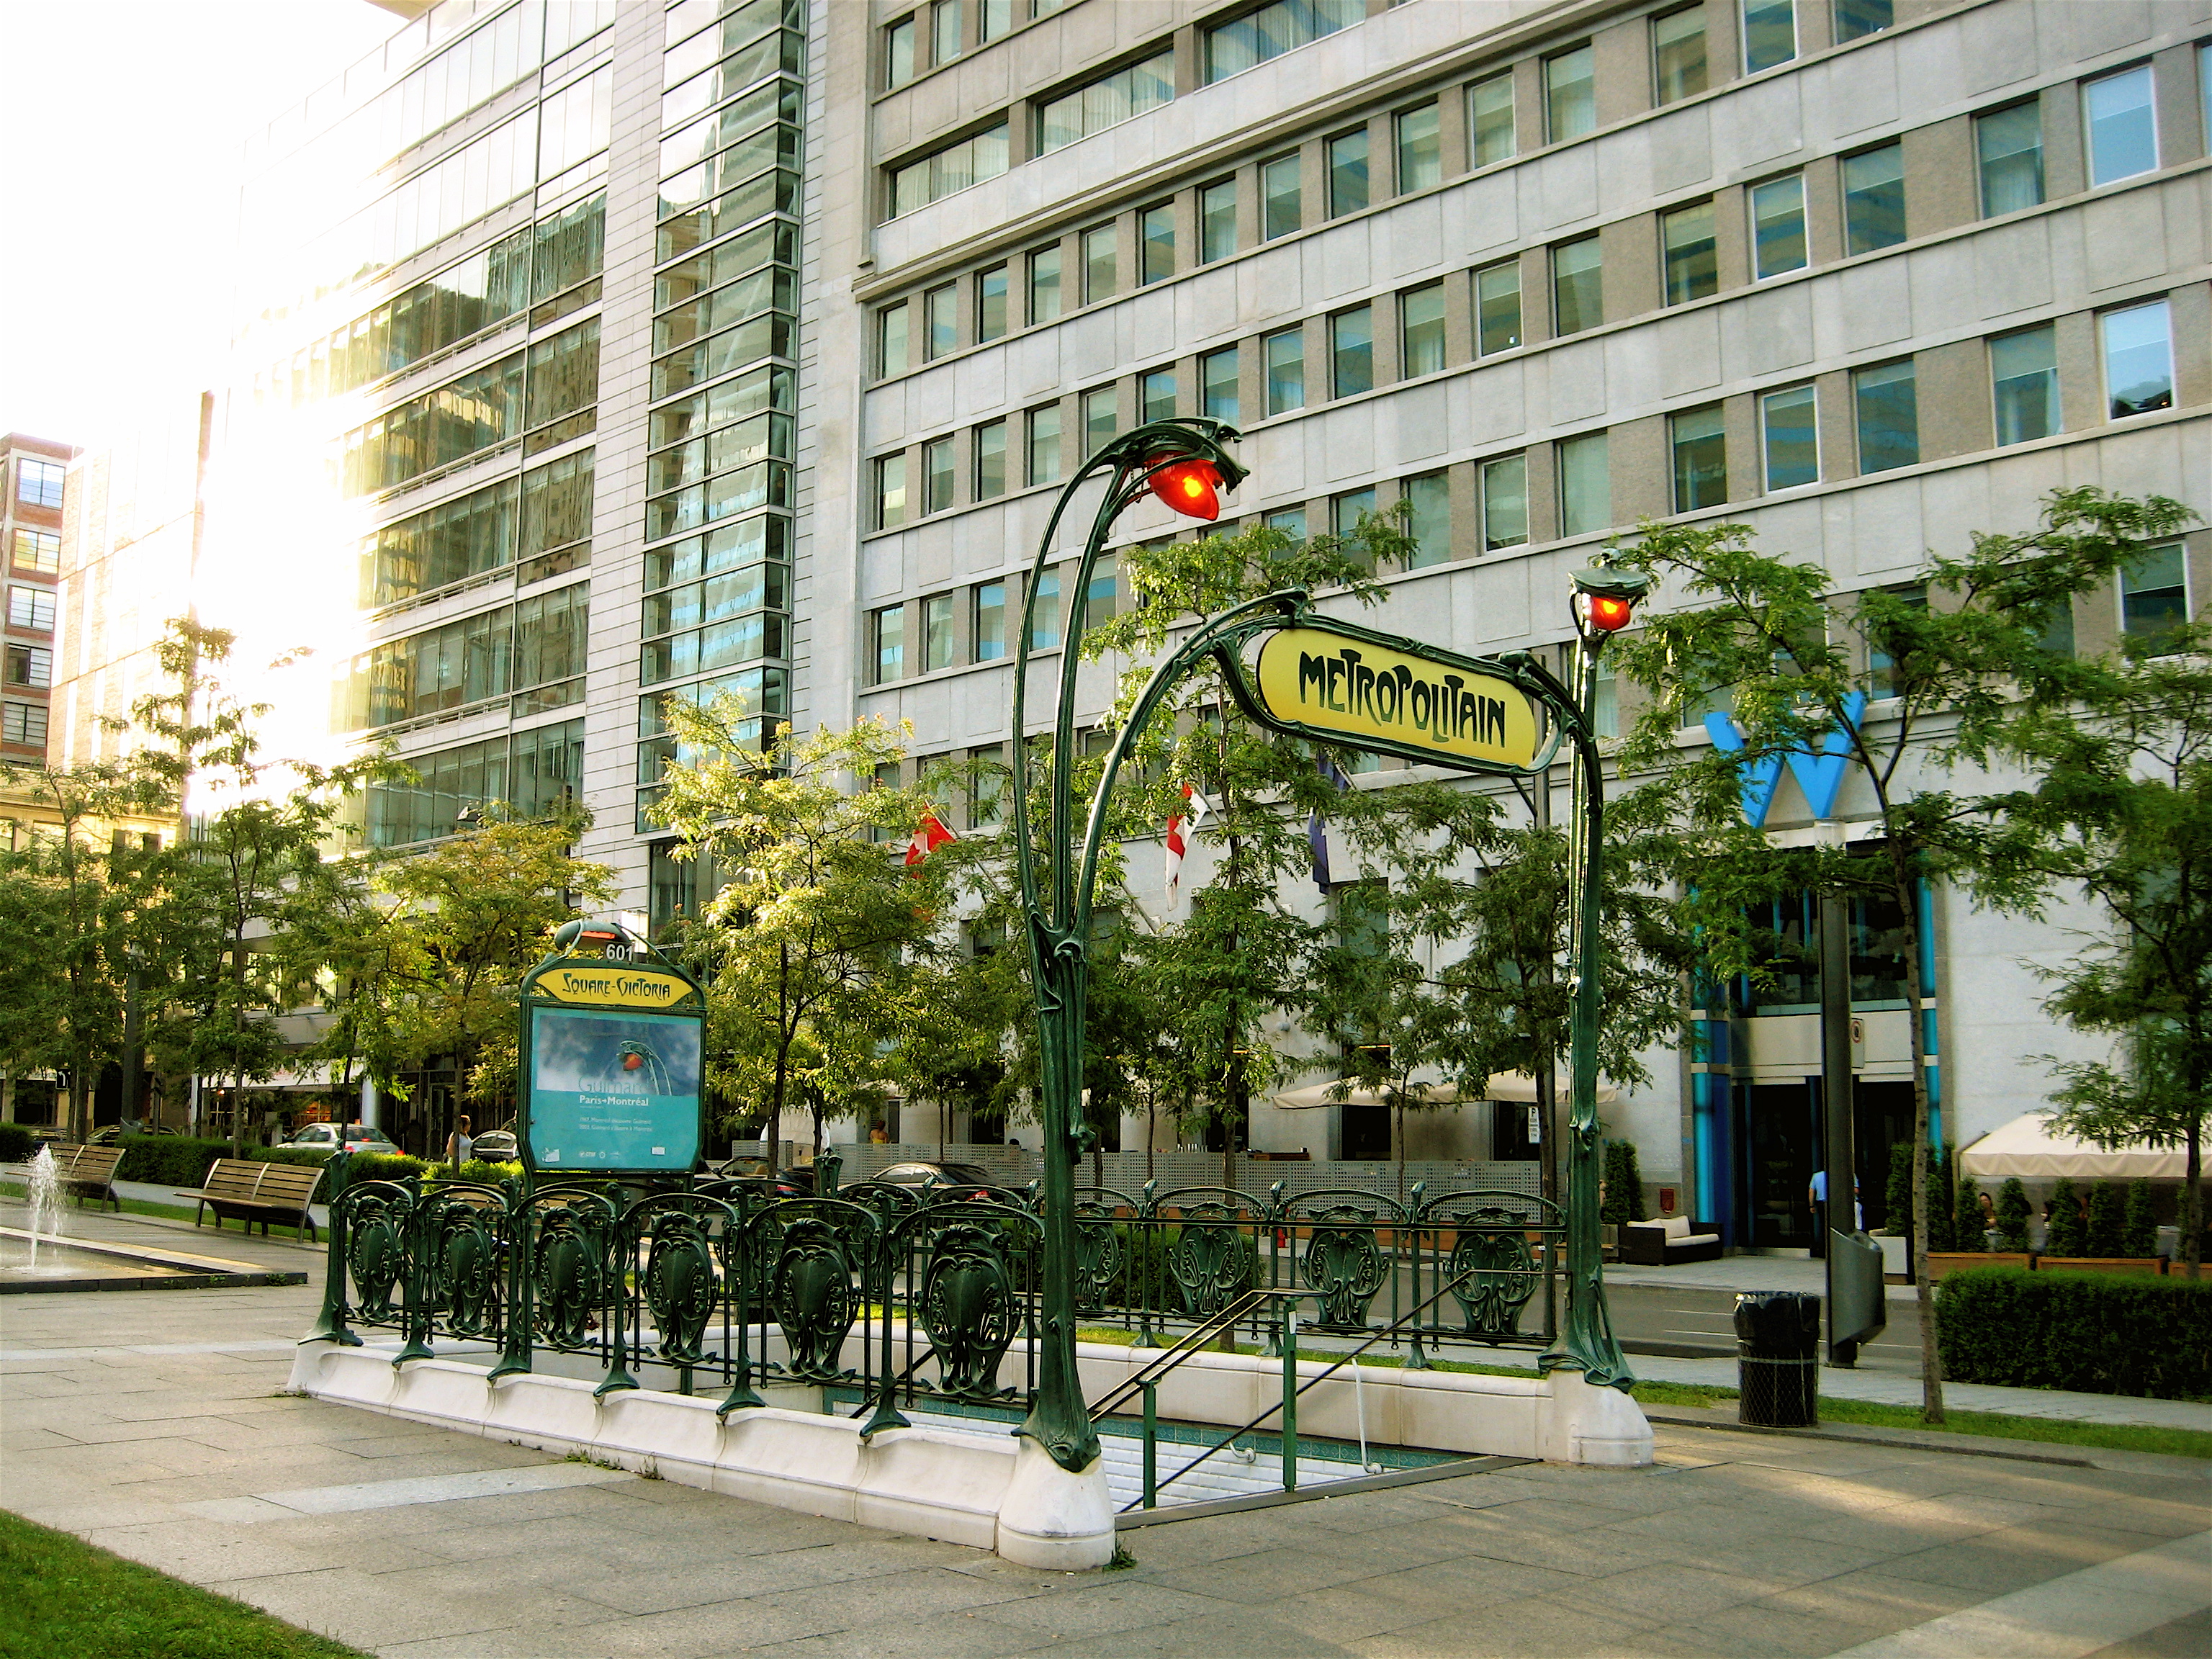 File:Square Victoria Metro Entrance.jpg - Wikimedia Commons